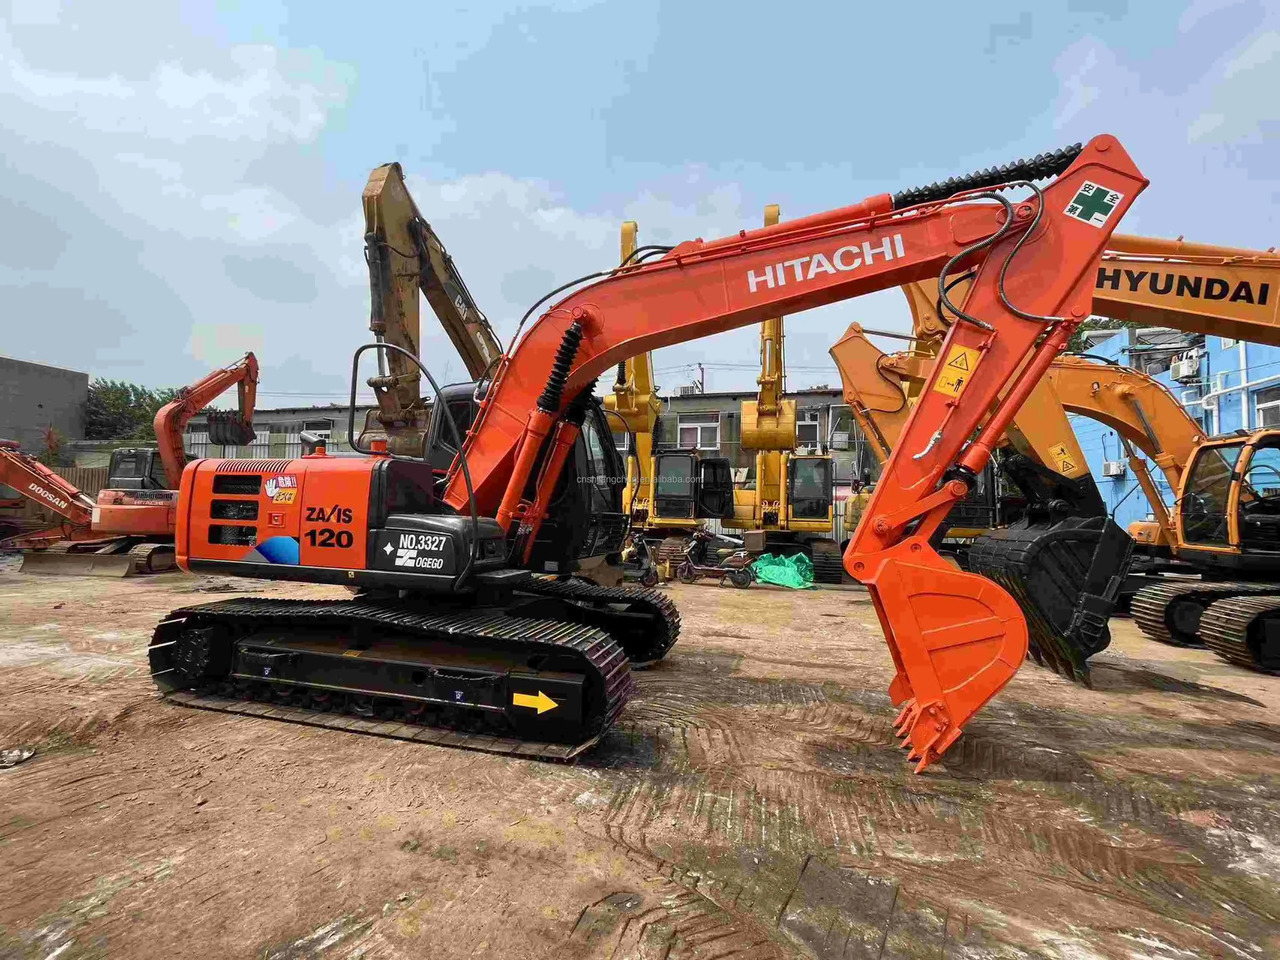 حفارة Excellent Work Condition Used Excavator Hitachi Excavator Zx120 Used Excavator With 12ton Operating Weight Hot Sale: صور 6